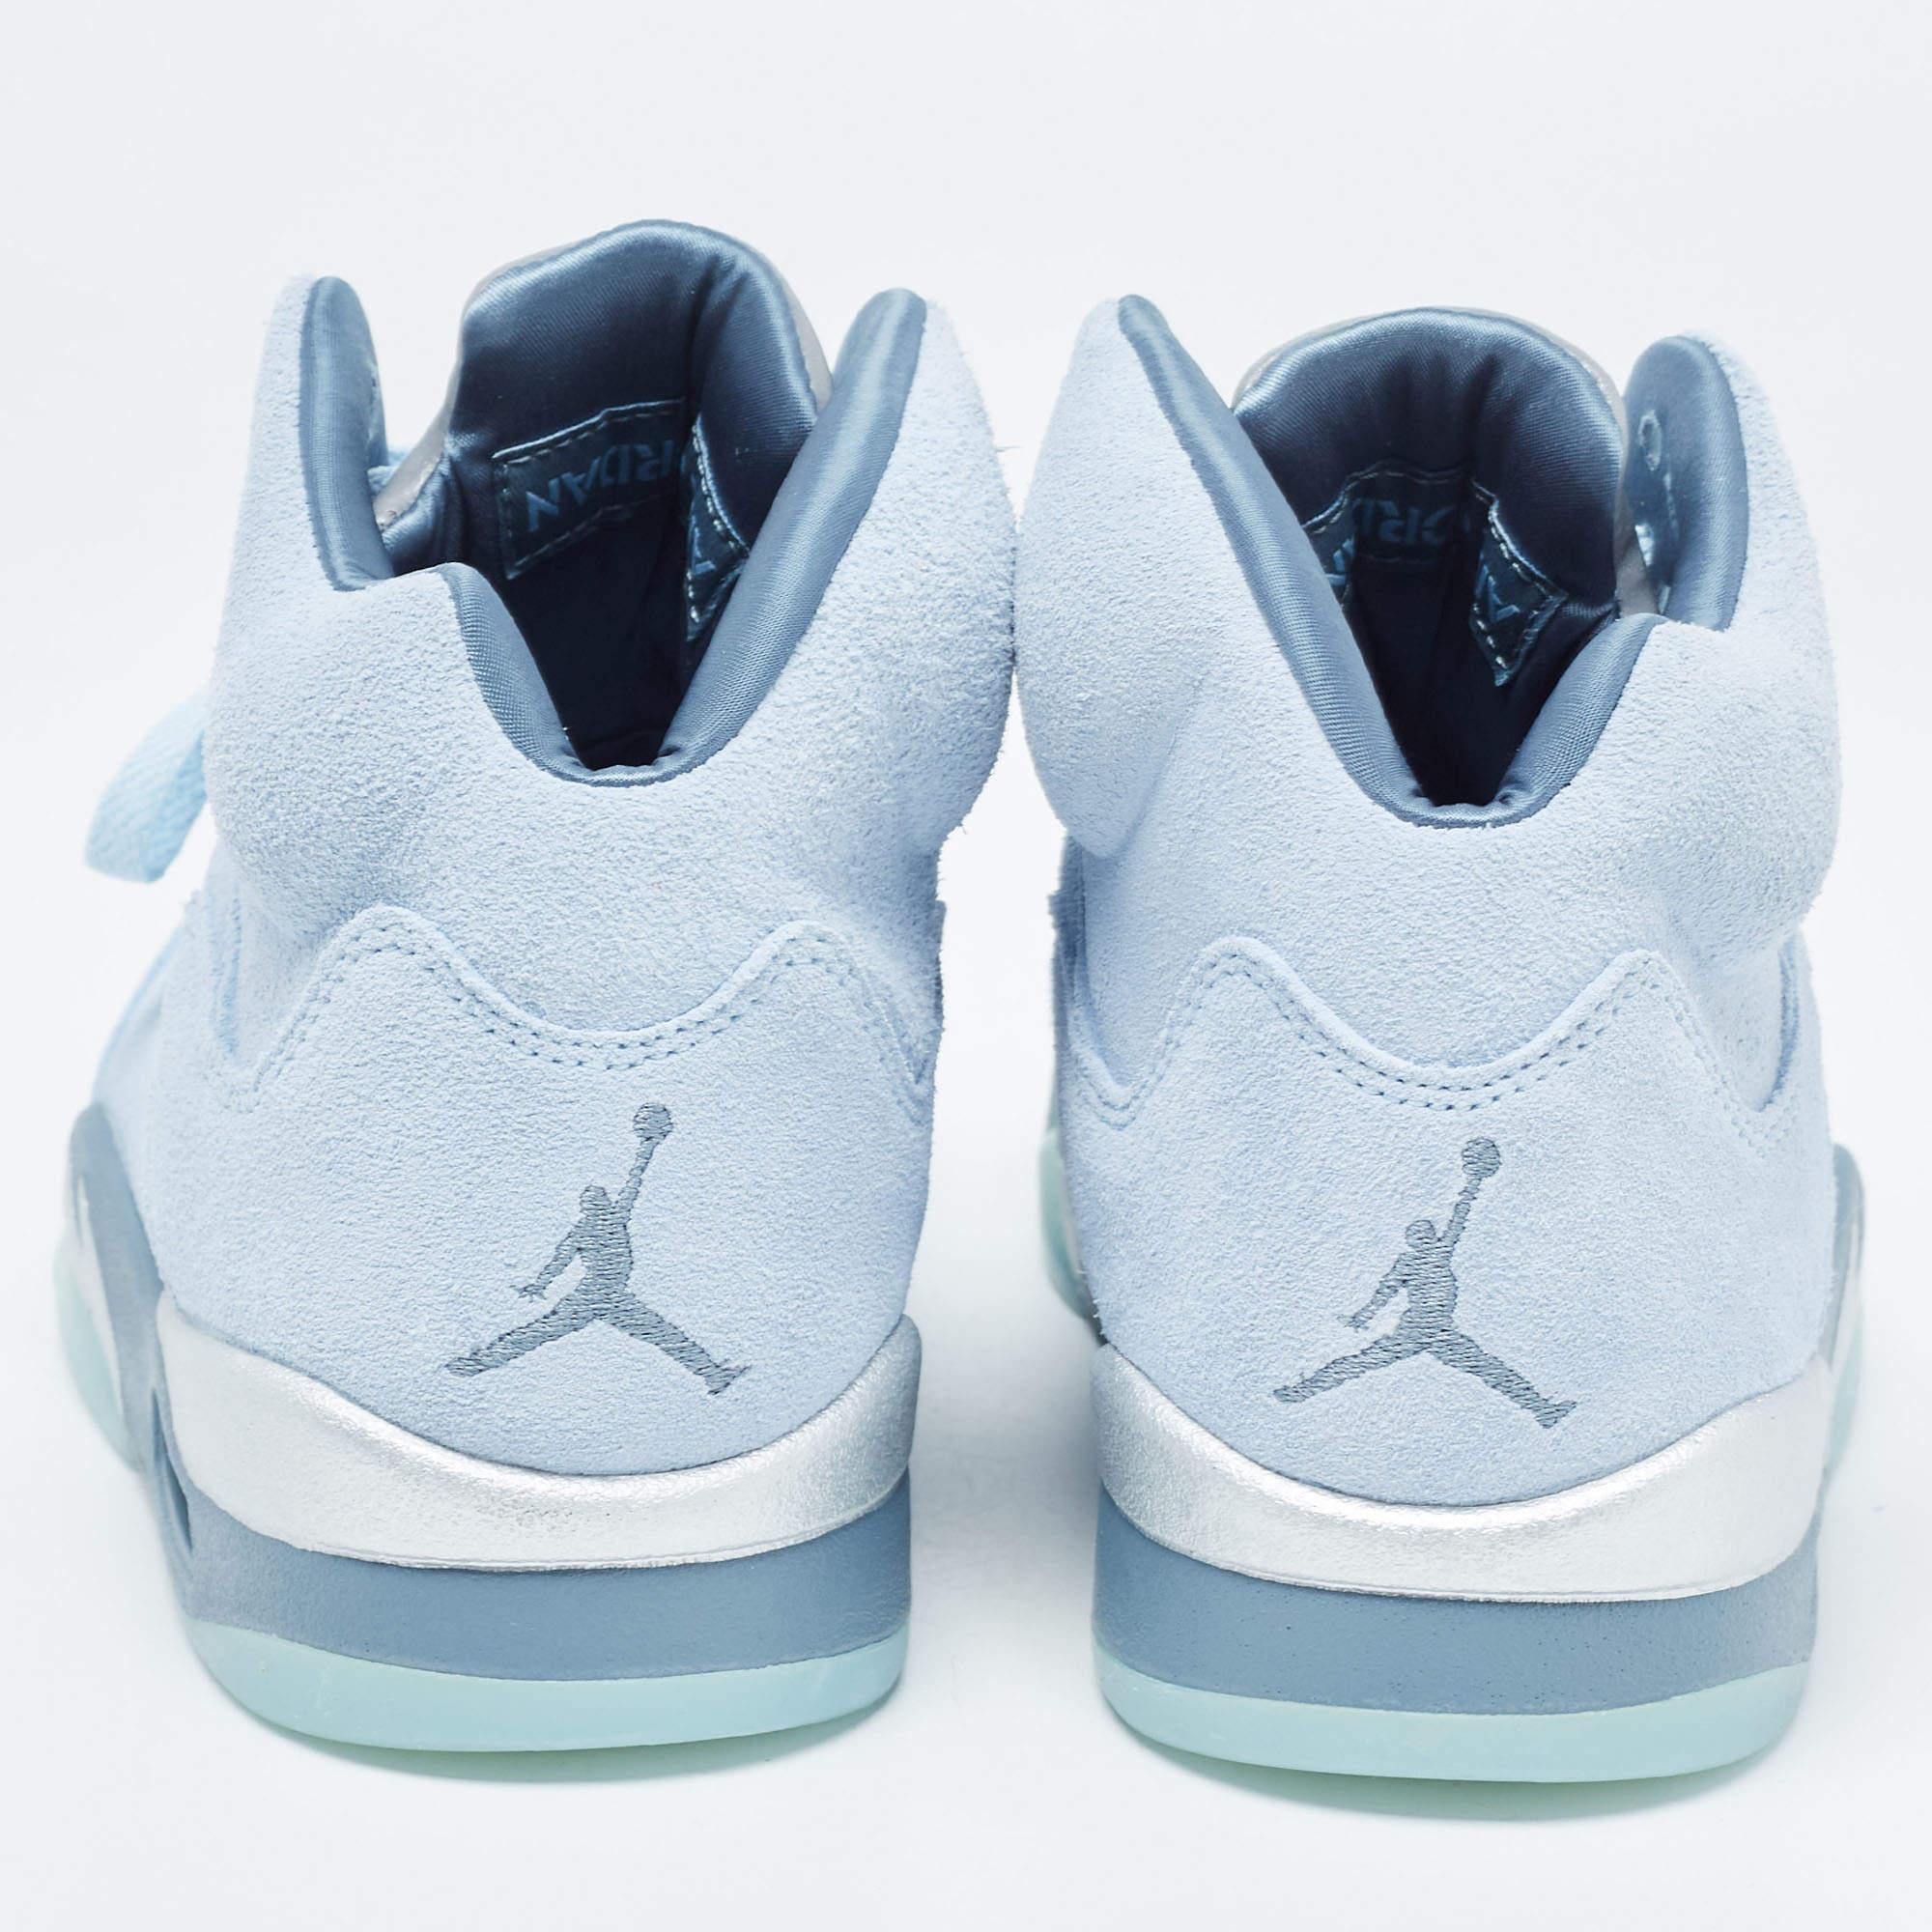 Air Jordans Blue Suede Air Jordan 1 High Top Sneakers Size 38 6